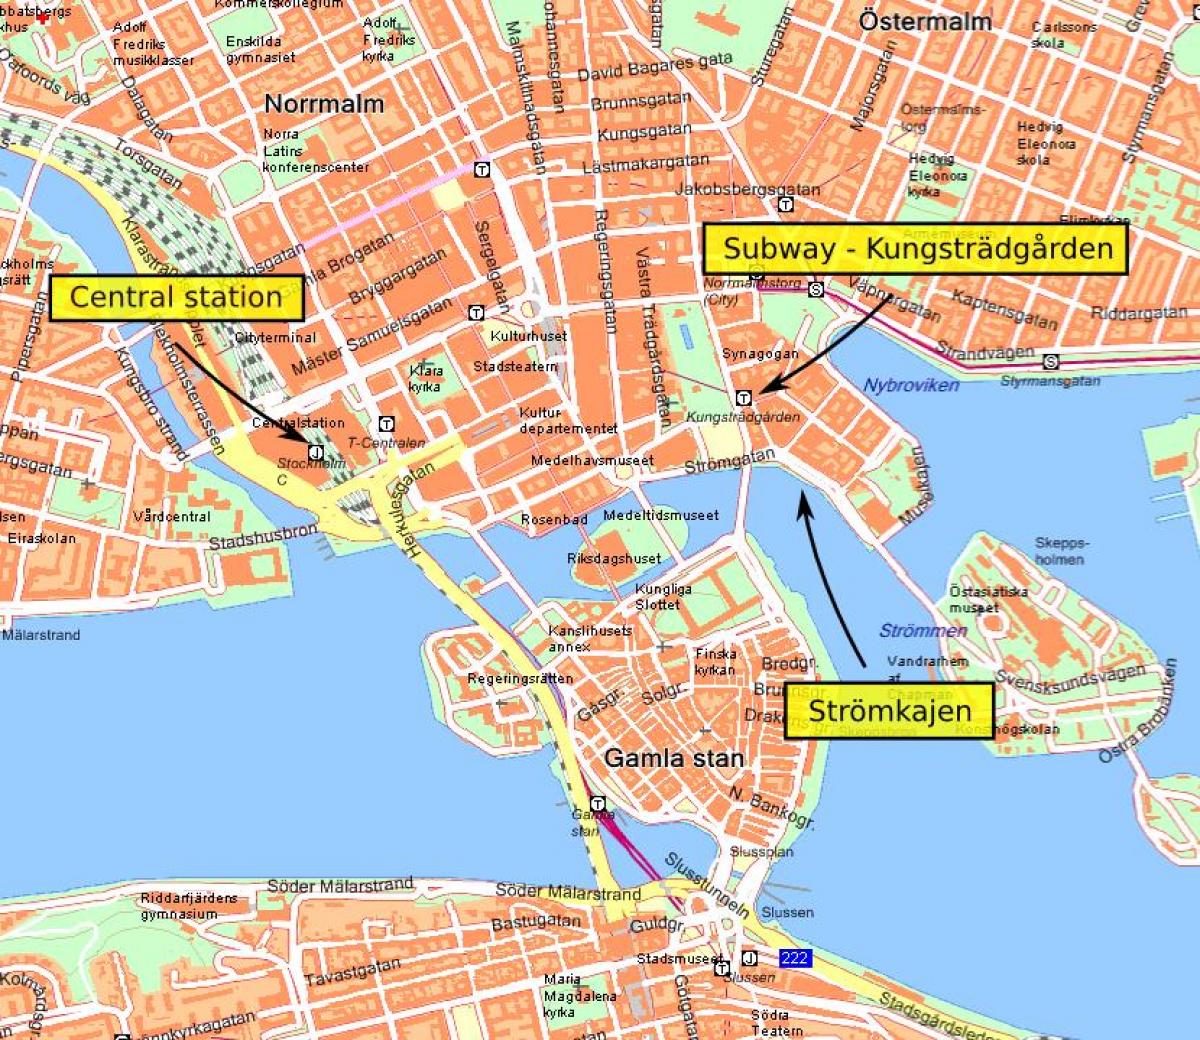 Estocolmo central mapa